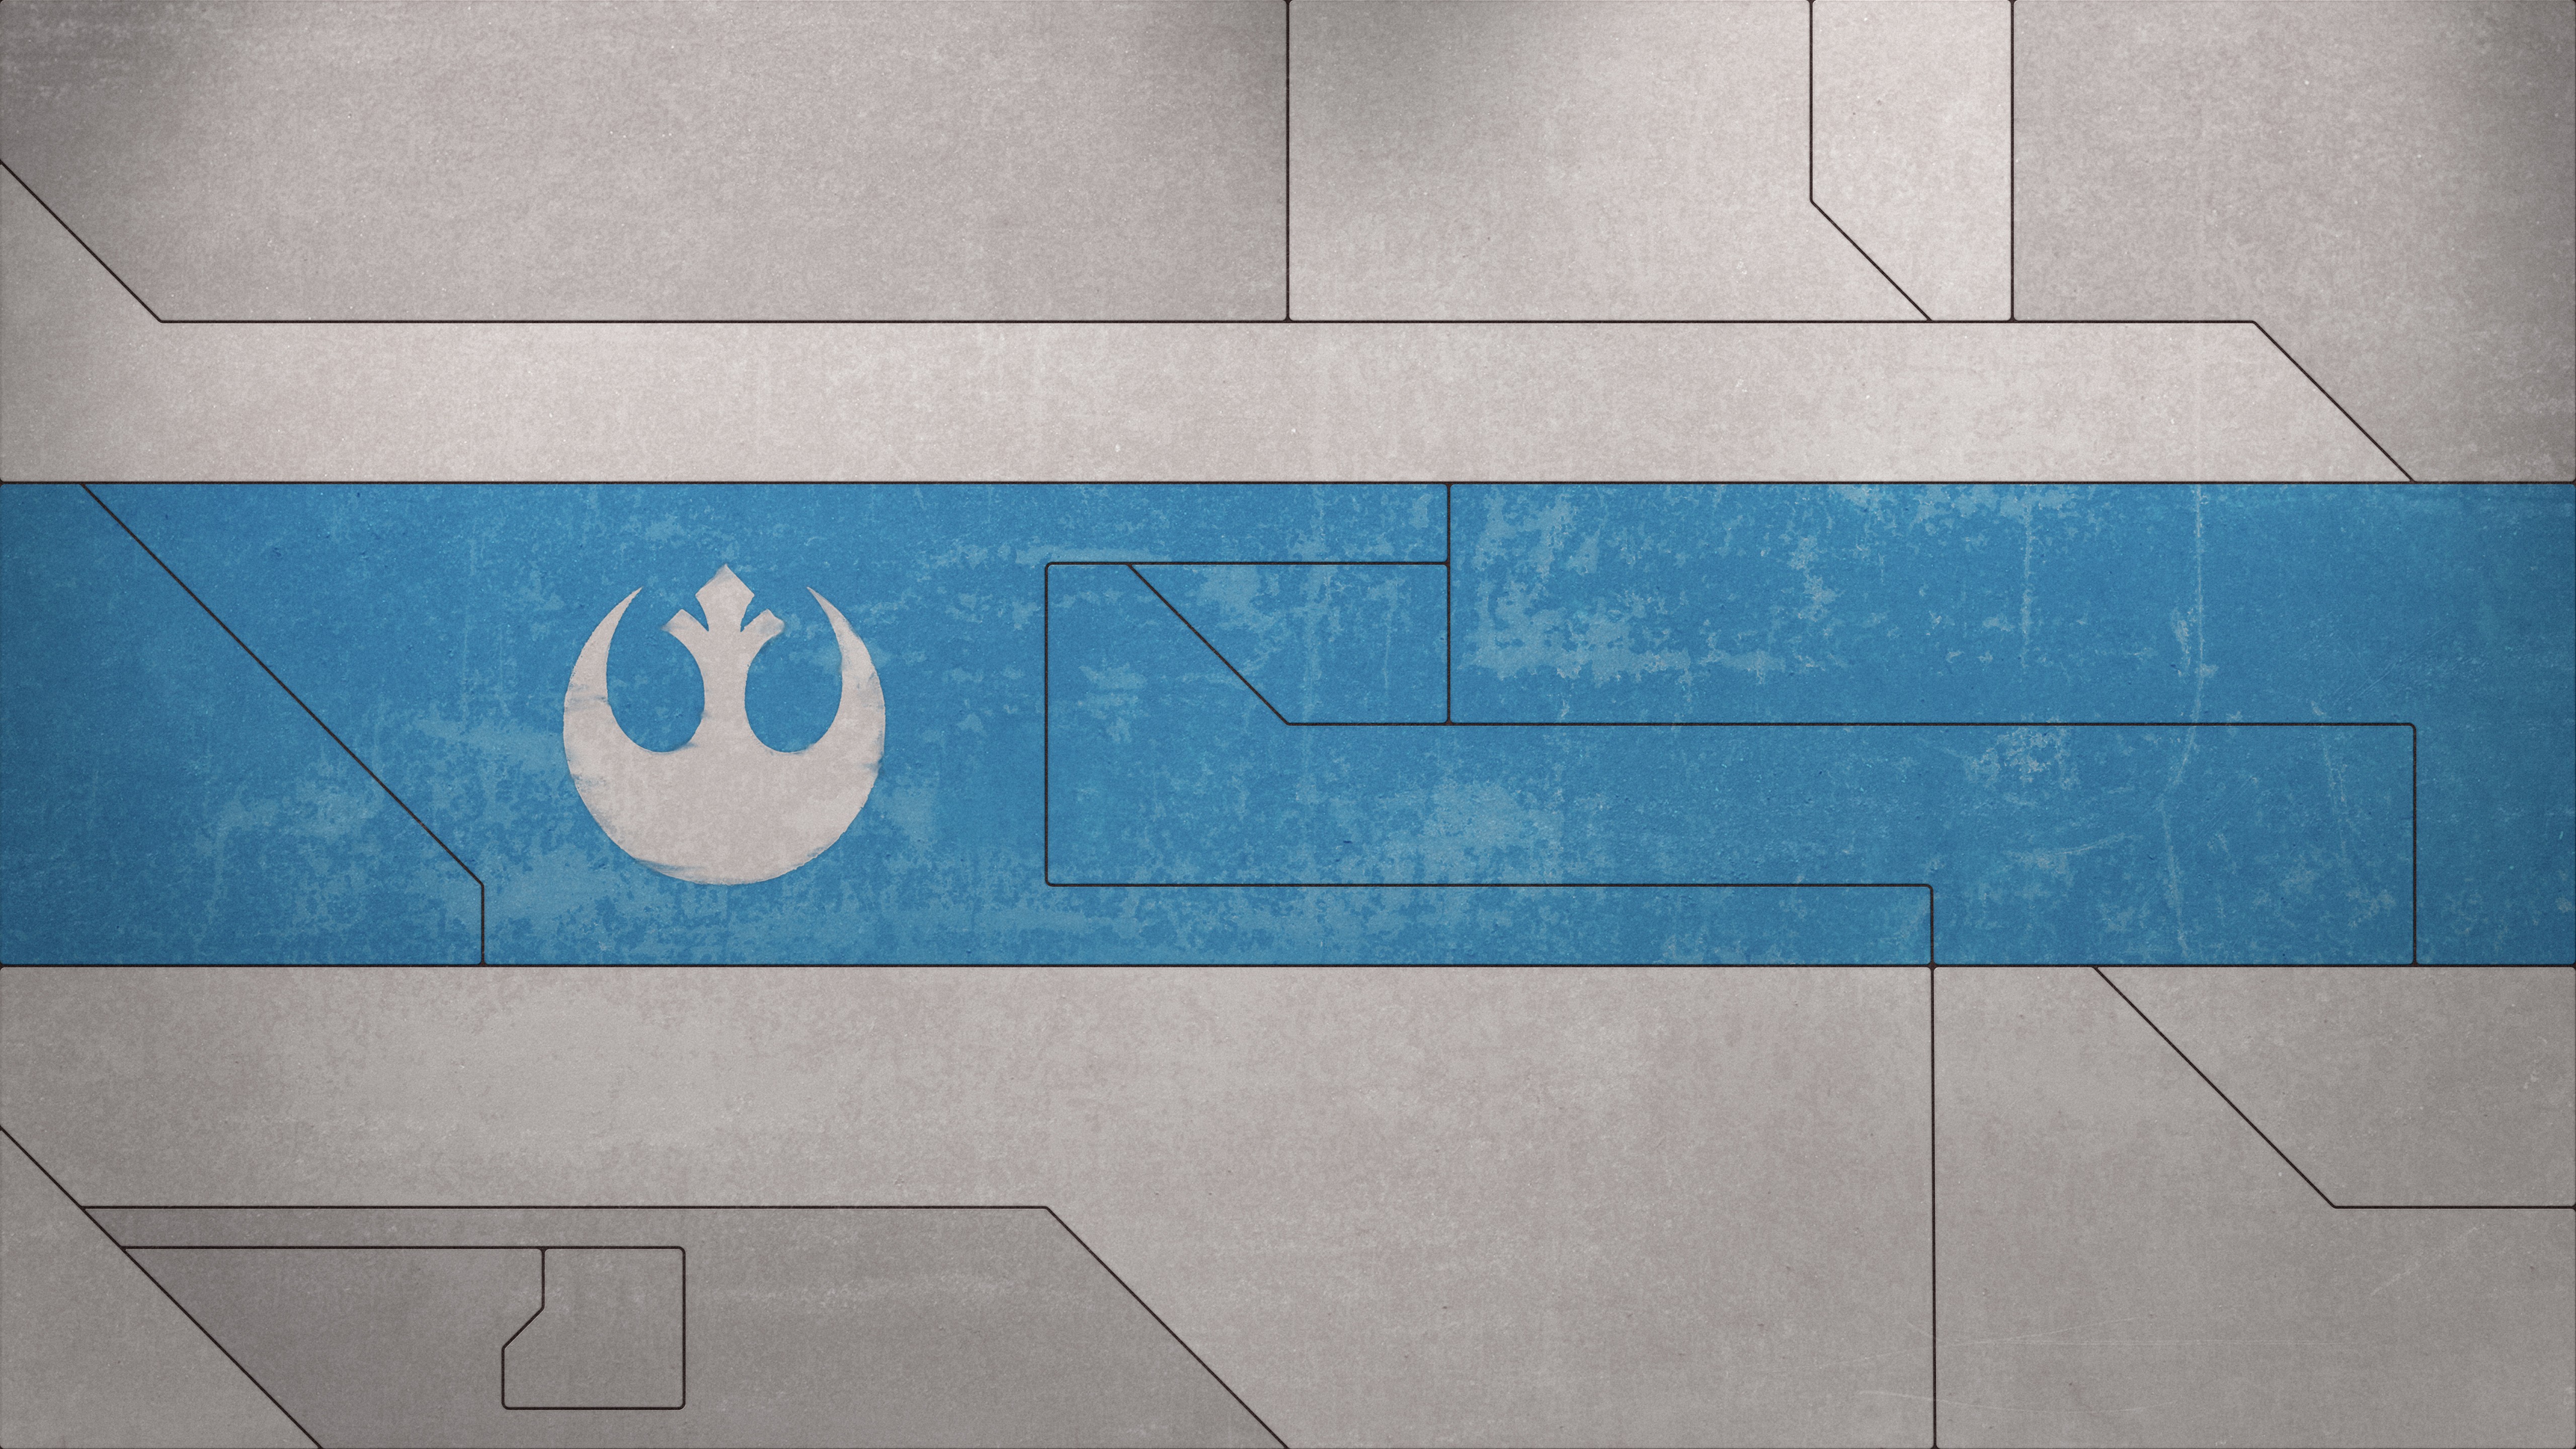 Star Wars X Wing Texture Spaceship Rebel Alliance Artwork 5120x2880